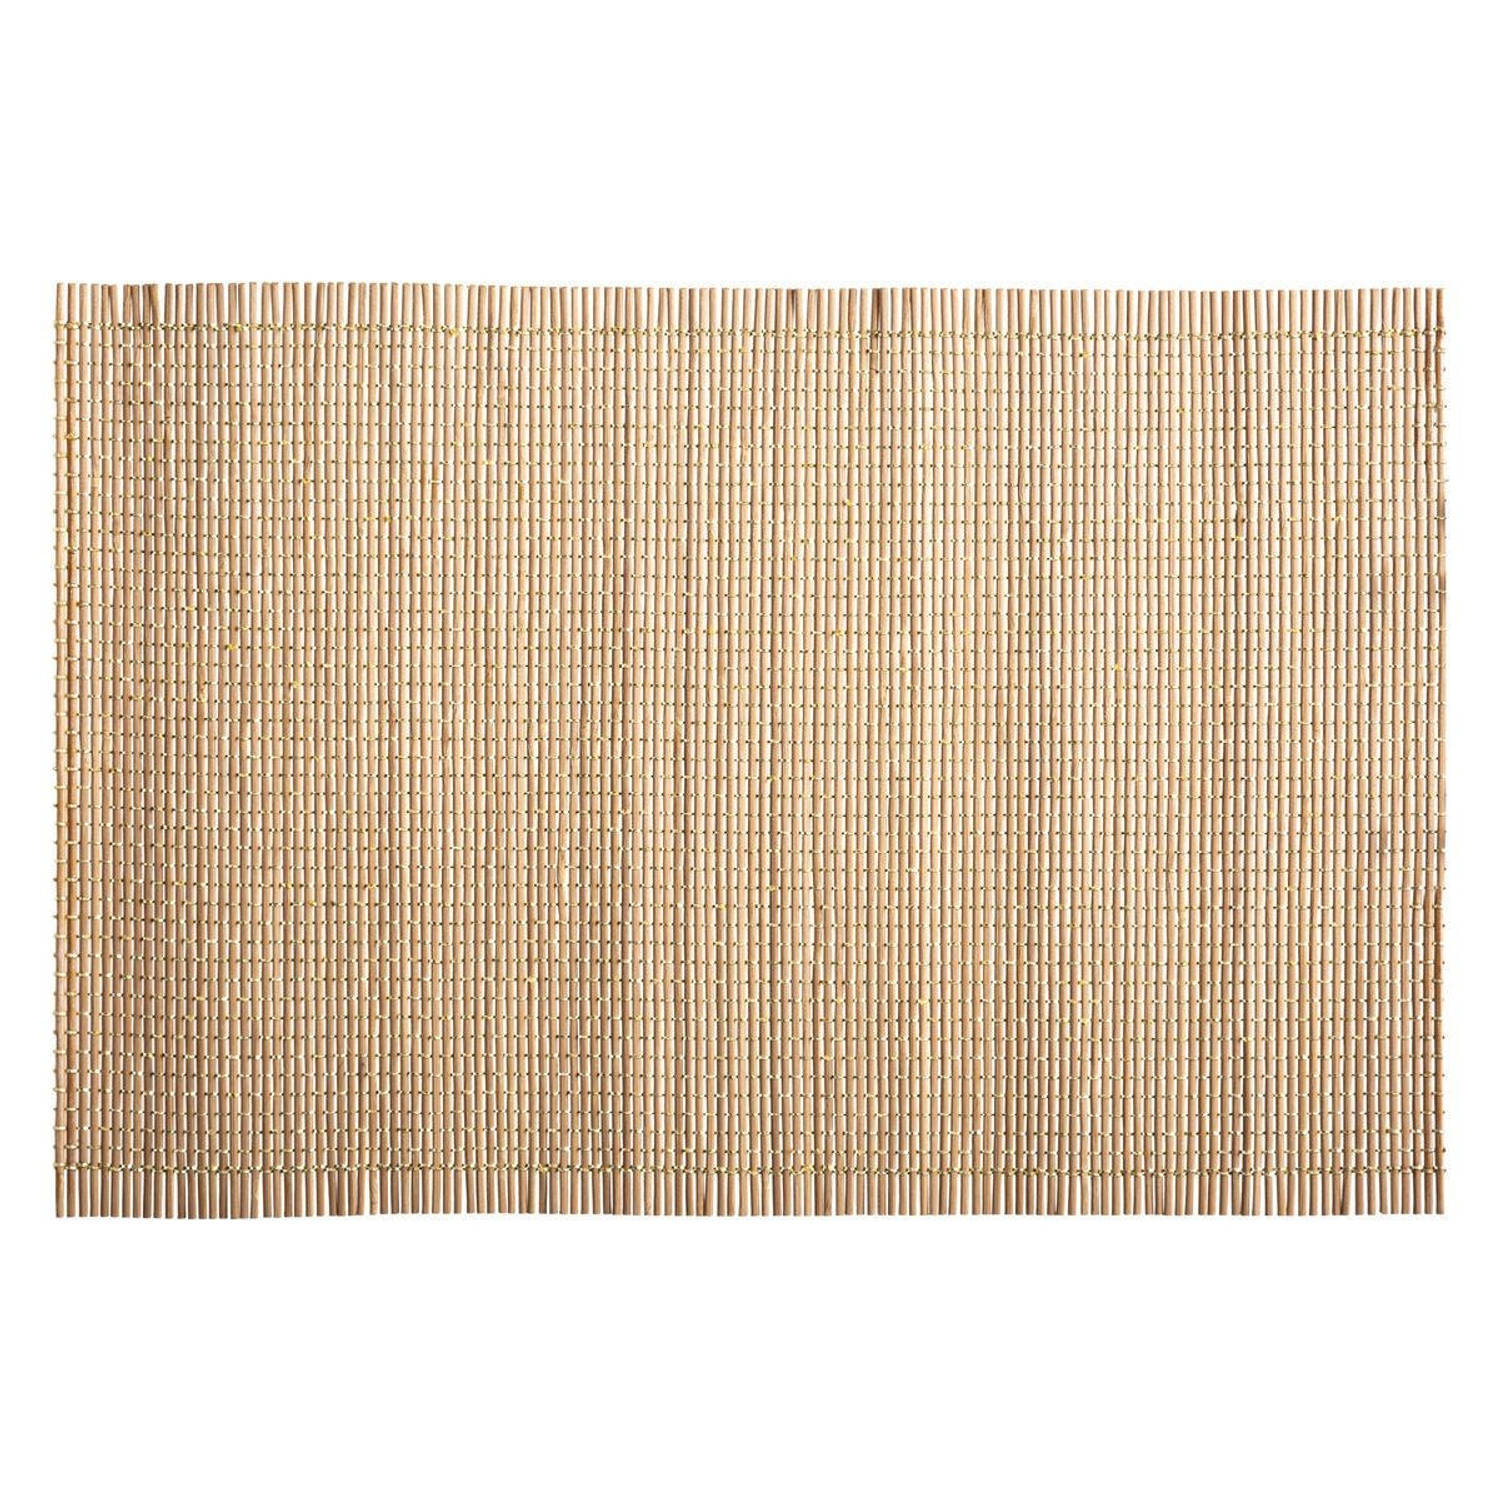 Rechthoekige placemat naturel bamboe - met goud draad - 45 x 30 cm - Placemats